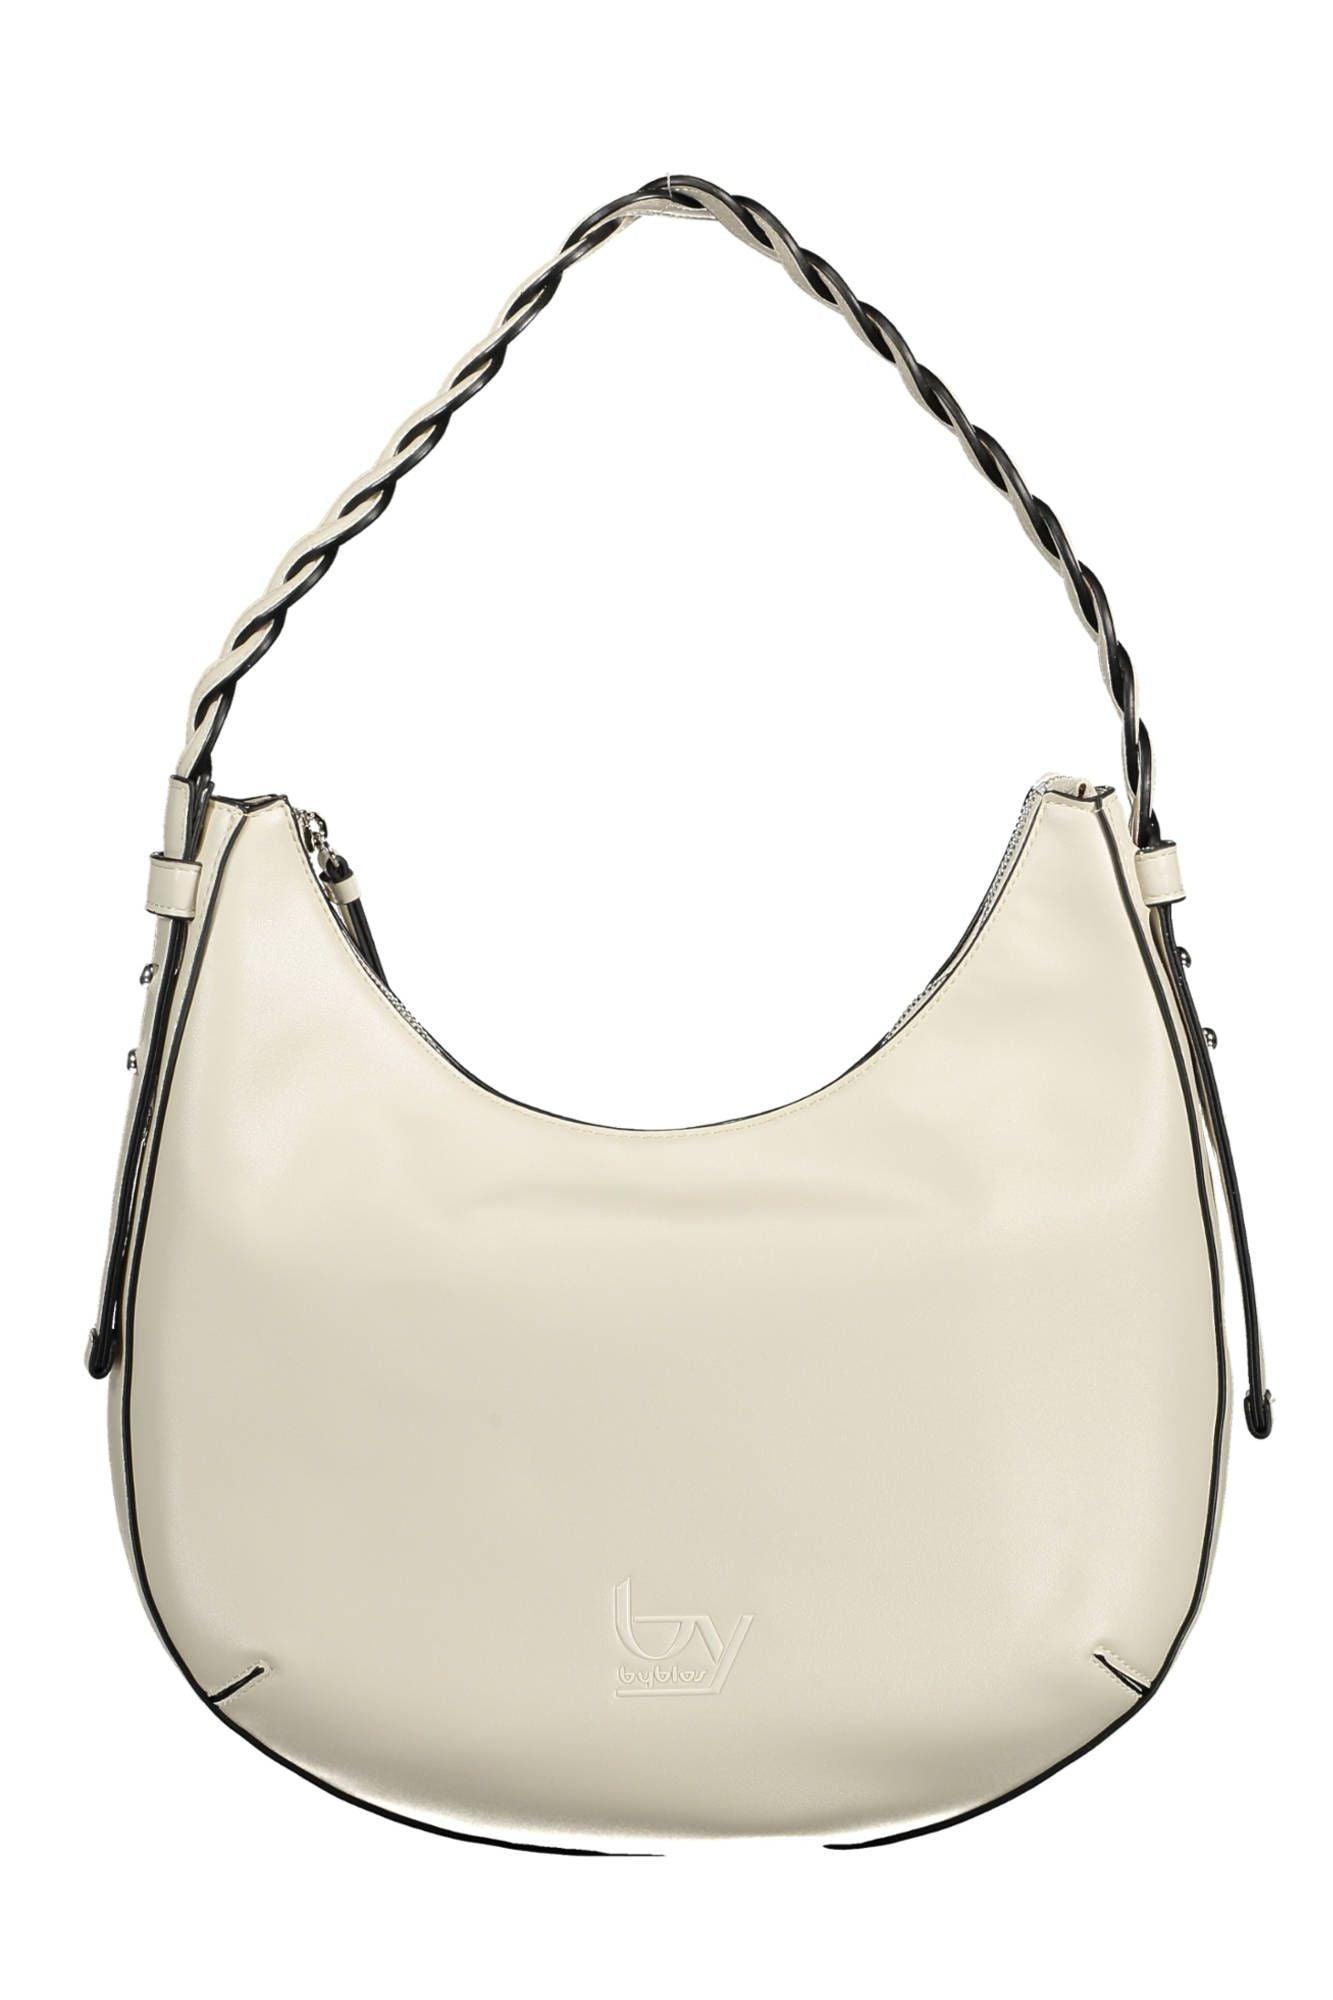 BYBLOS Chic Contrasting Detail White PVC Handbag - PER.FASHION